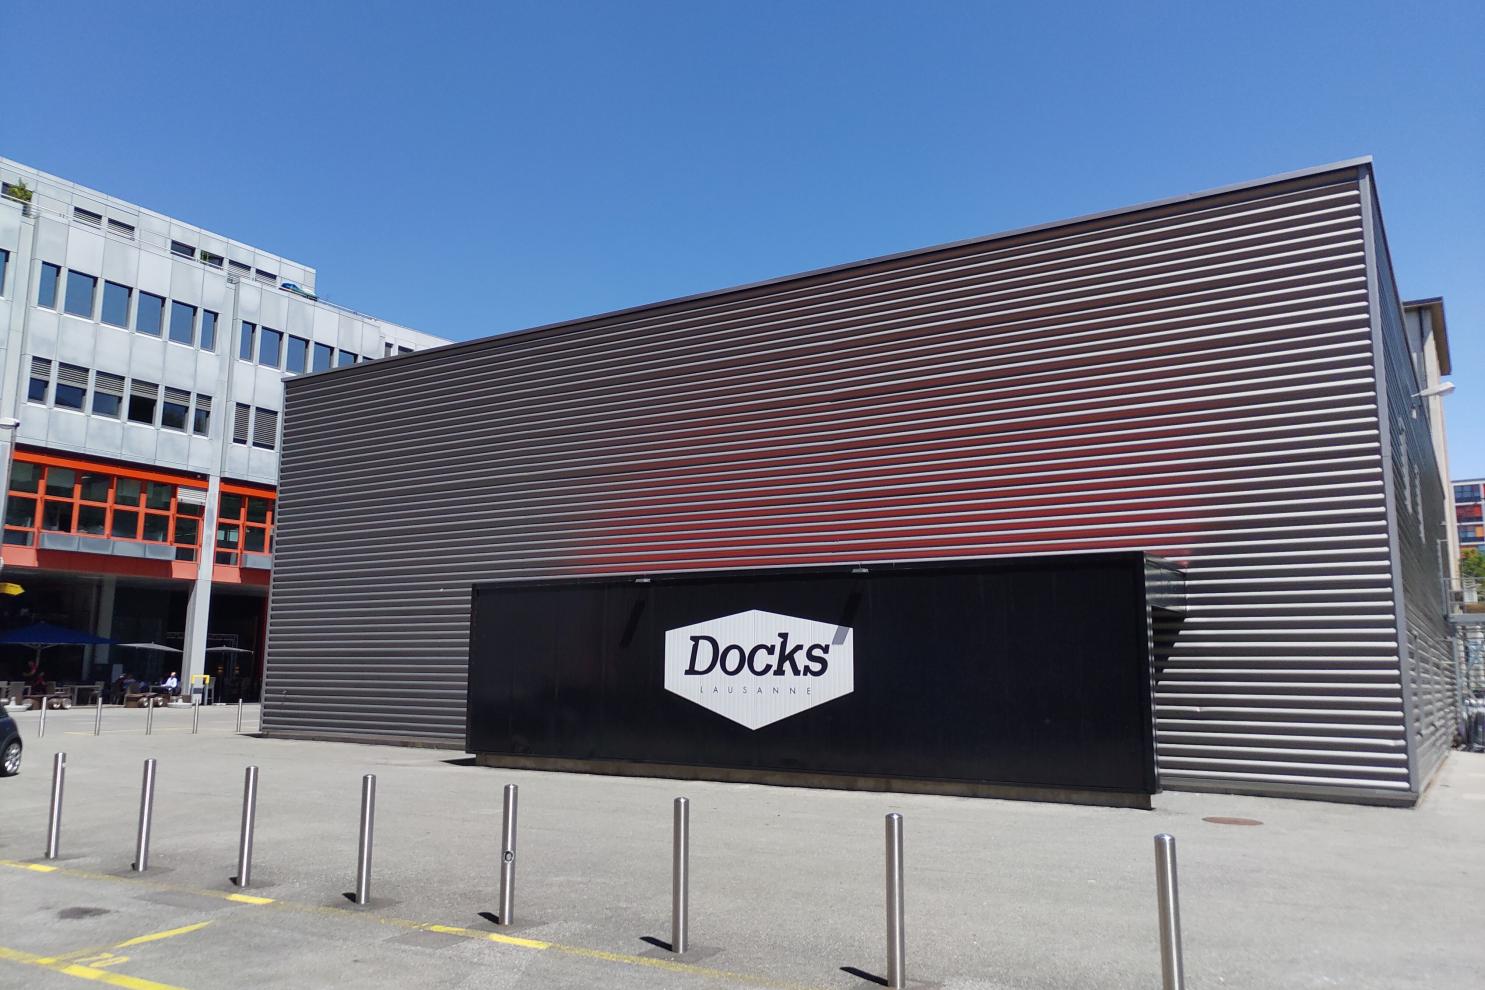 Les Docks facade